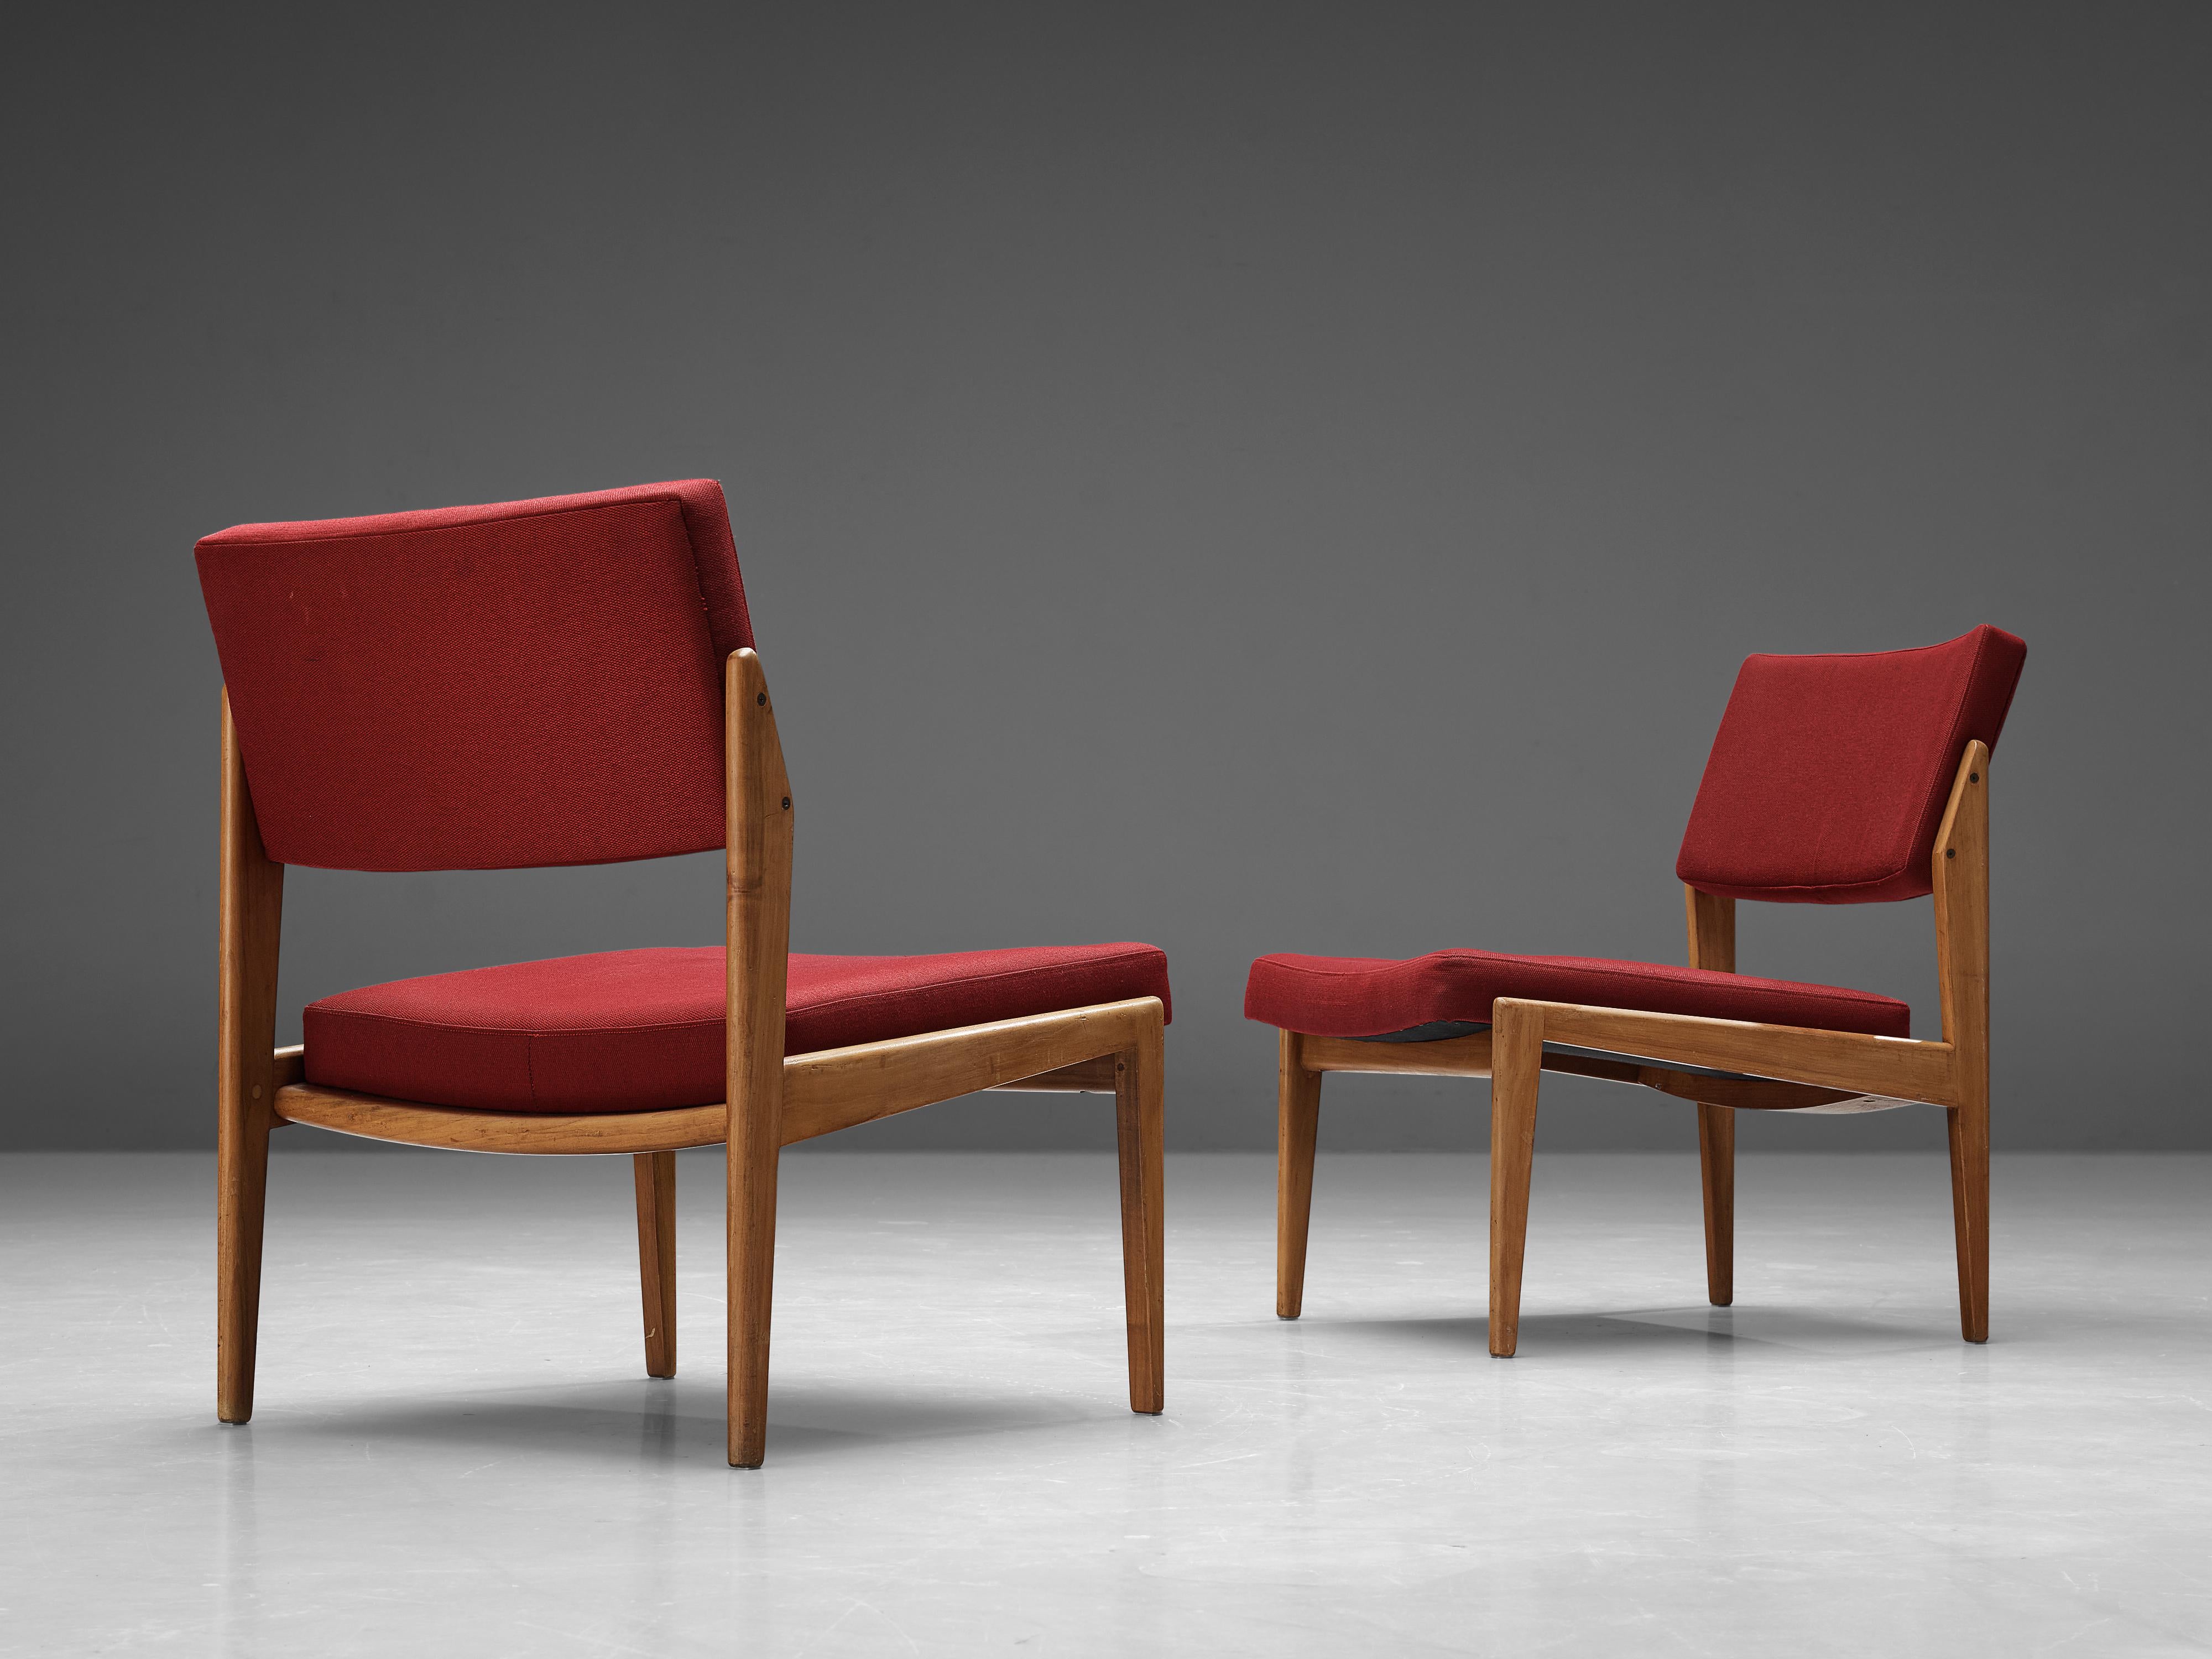 Thonet, Paar Stühle, Kirsche, Stoff, Deutschland, 1930er Jahre

Dieses einzigartige Stuhlpaar hat eine herrliche Konstruktion, die eine einfache, natürliche und zeitlose Ästhetik verkörpert. Das Design zeichnet sich durch klare, gerade Linien aus,